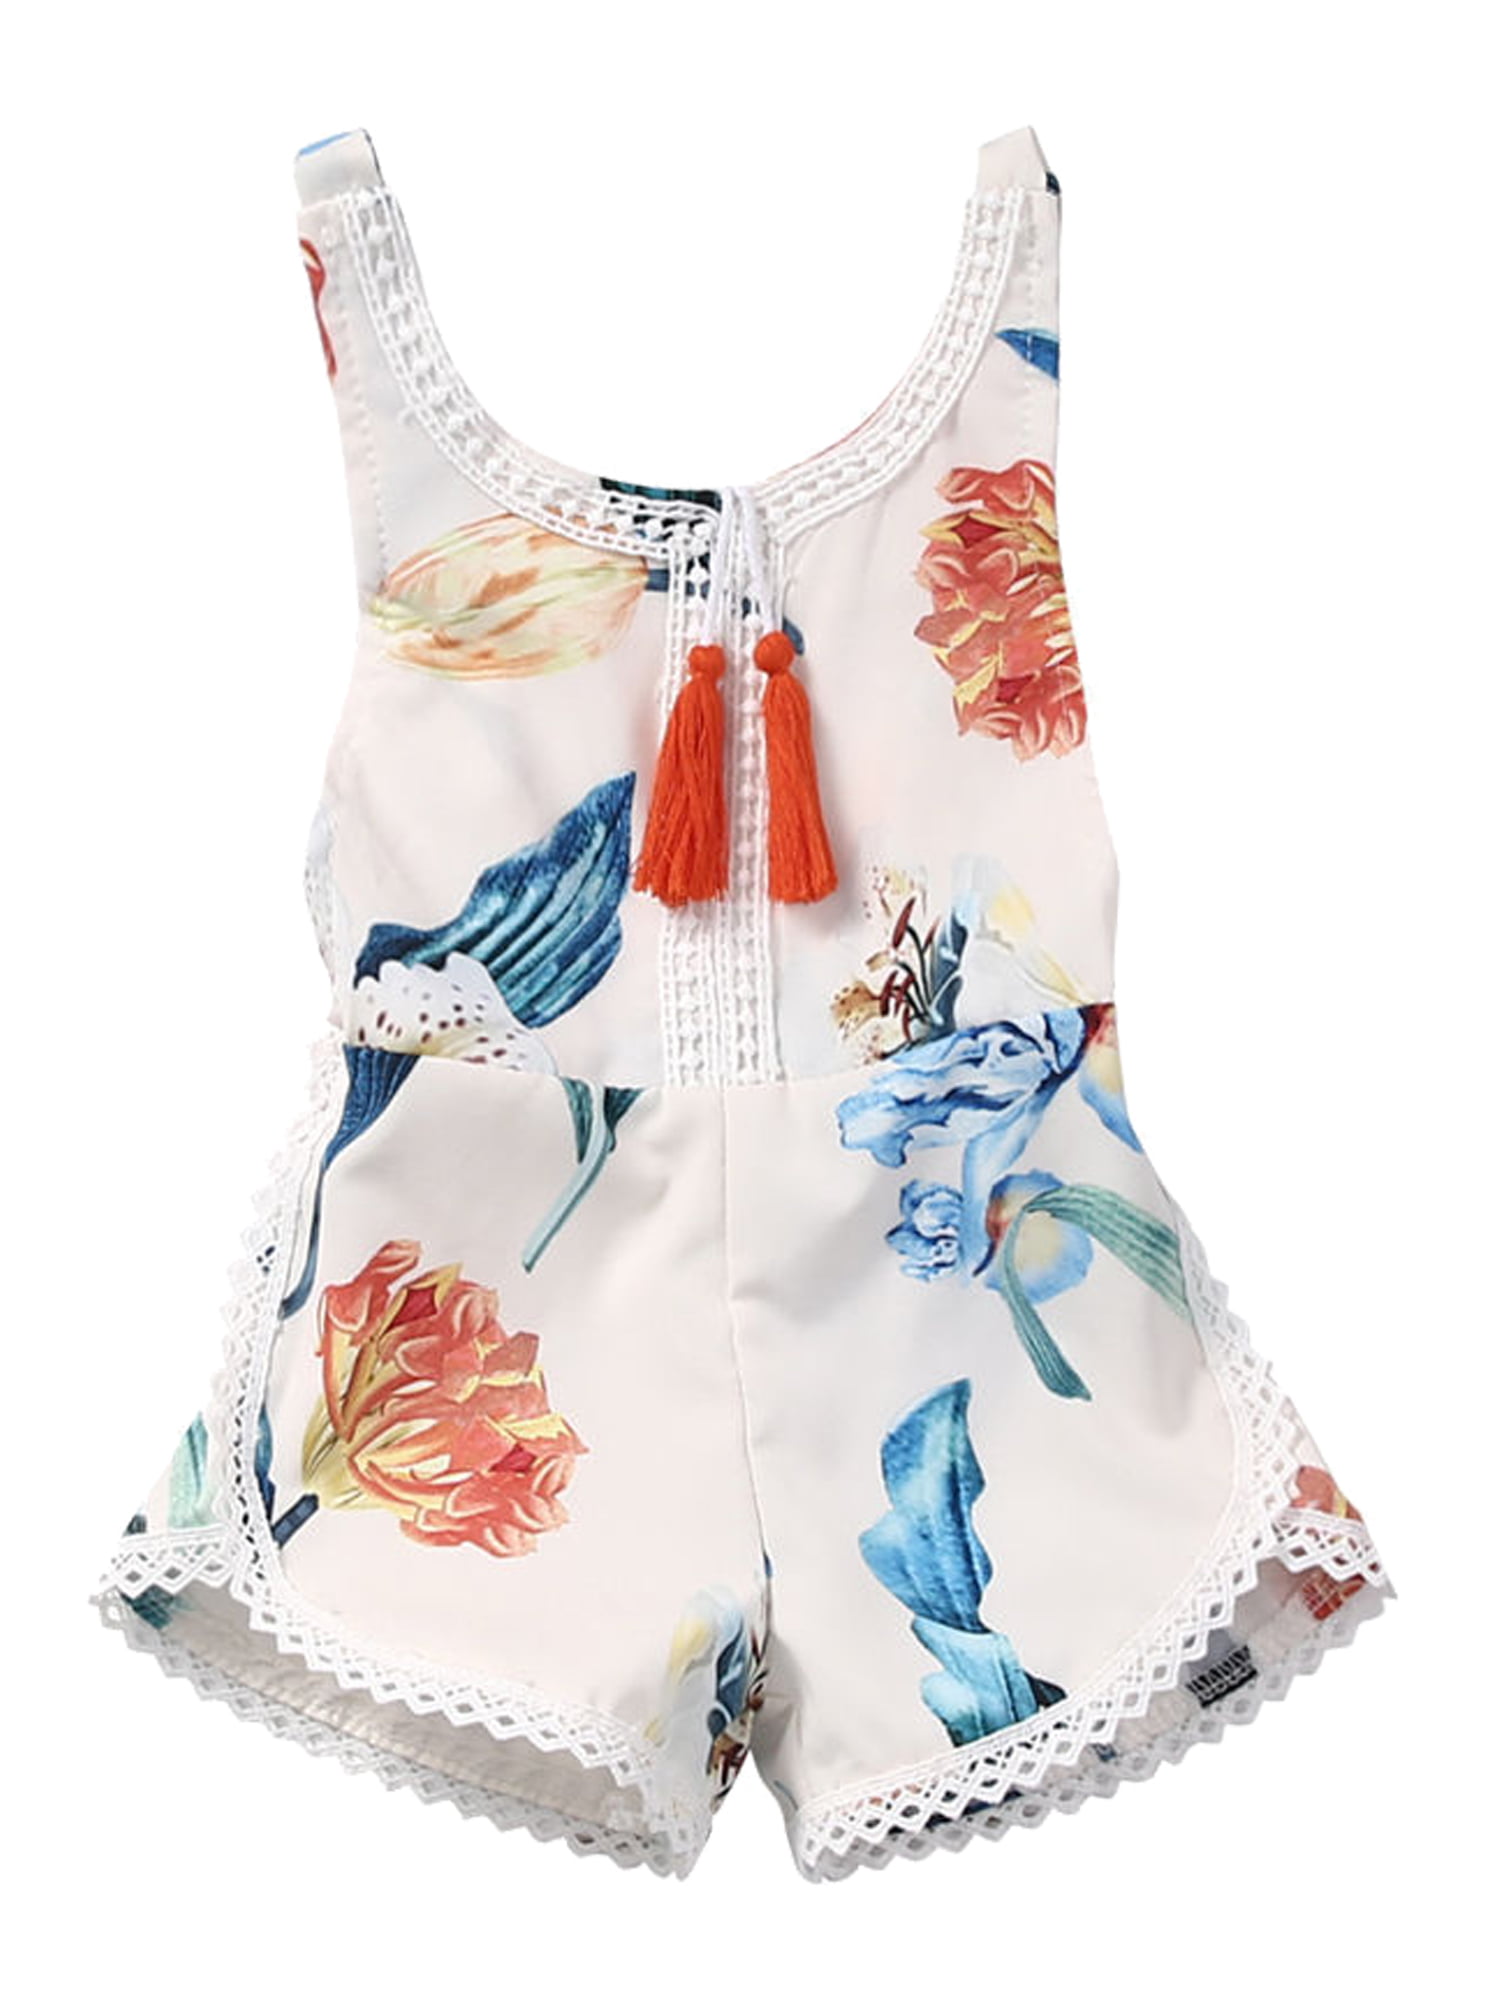 US Newborn Baby Girl Floral Romper Bodysuit Jumpsuit Outfits Sunsuit Clothes Set 